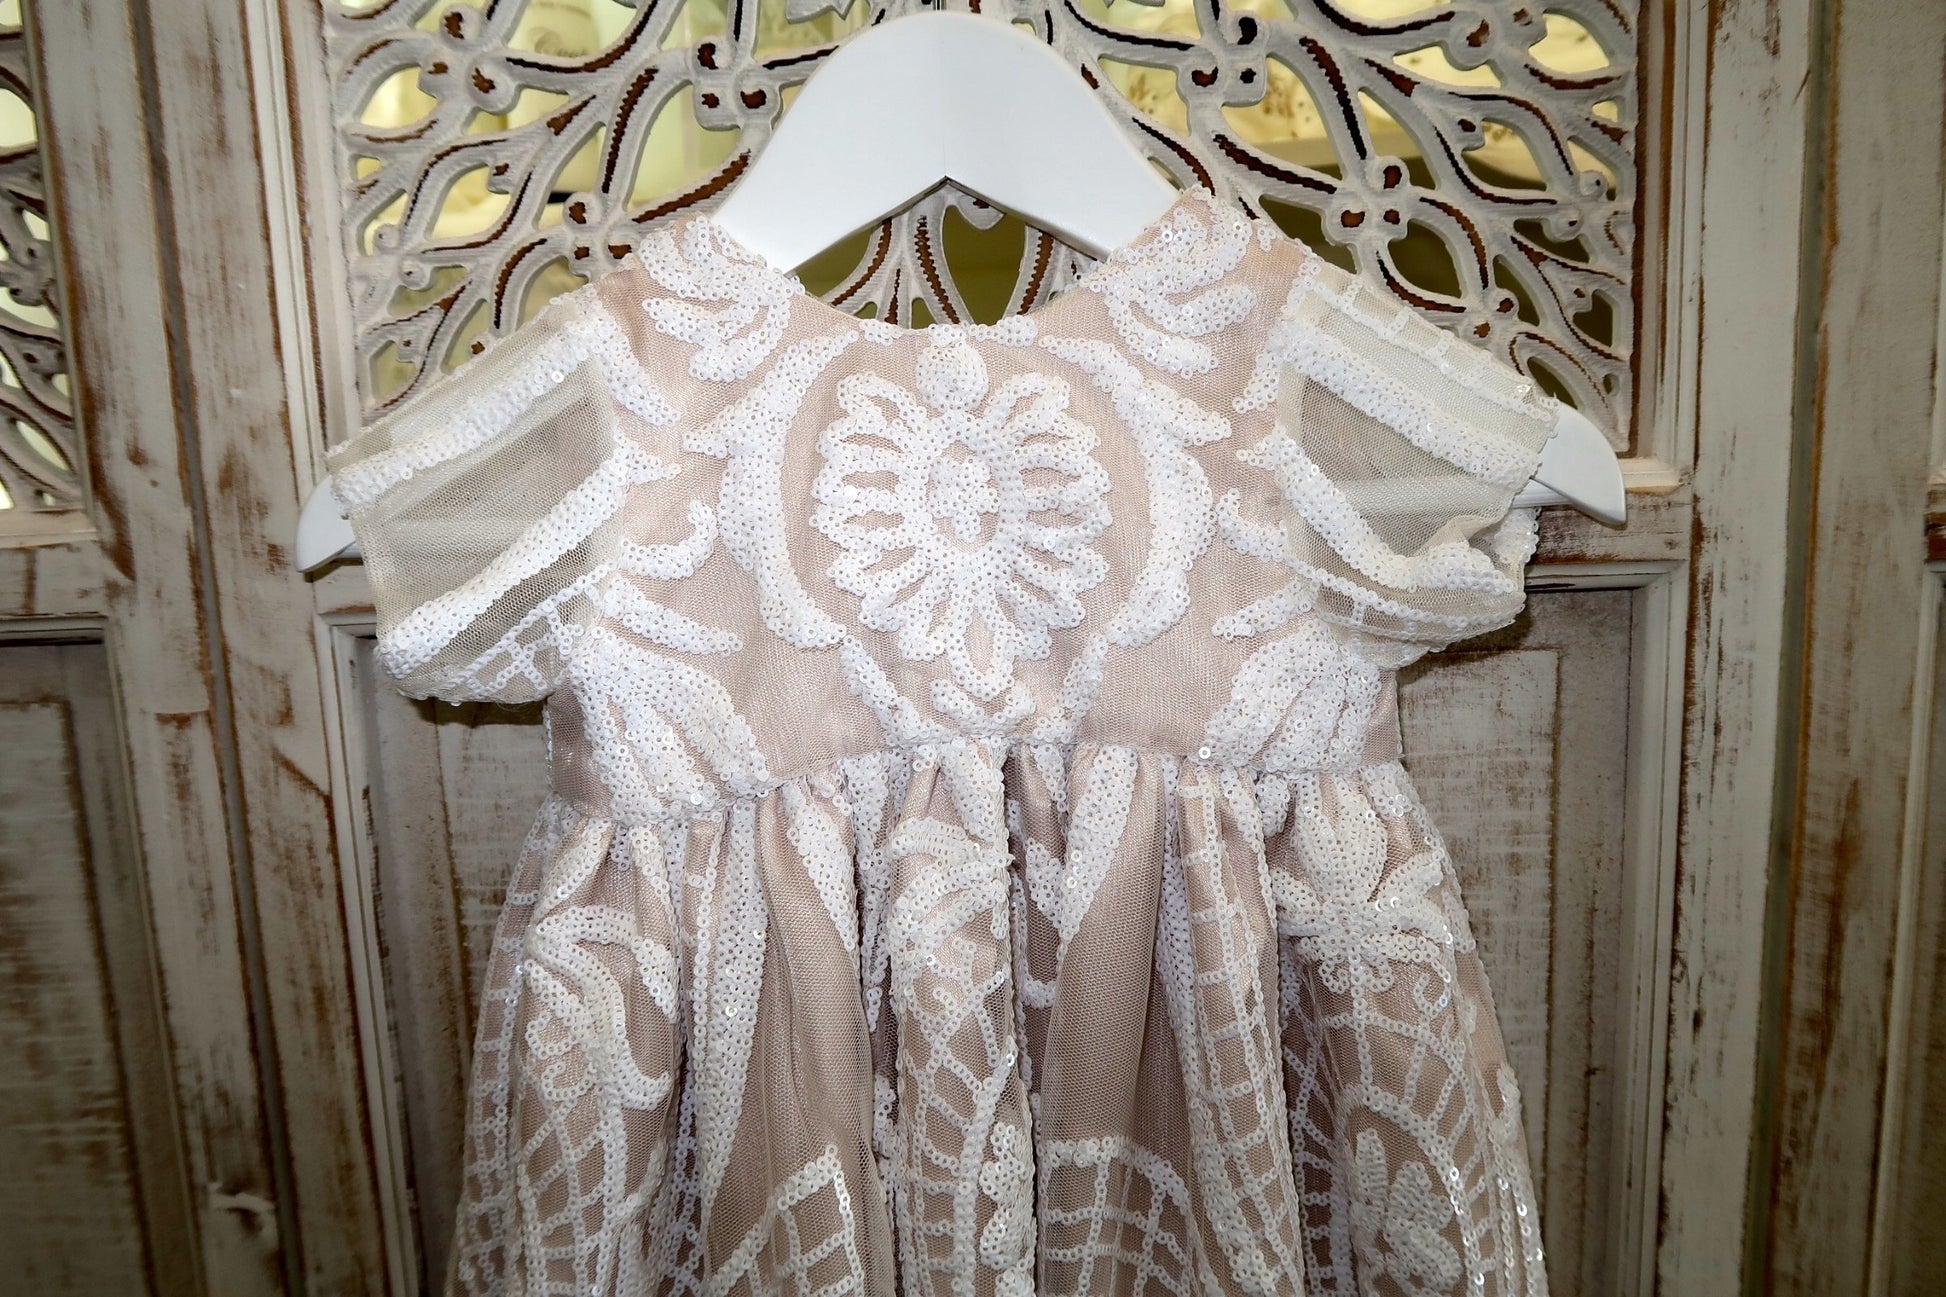 zara christening gown pandora designs melbourne - 1